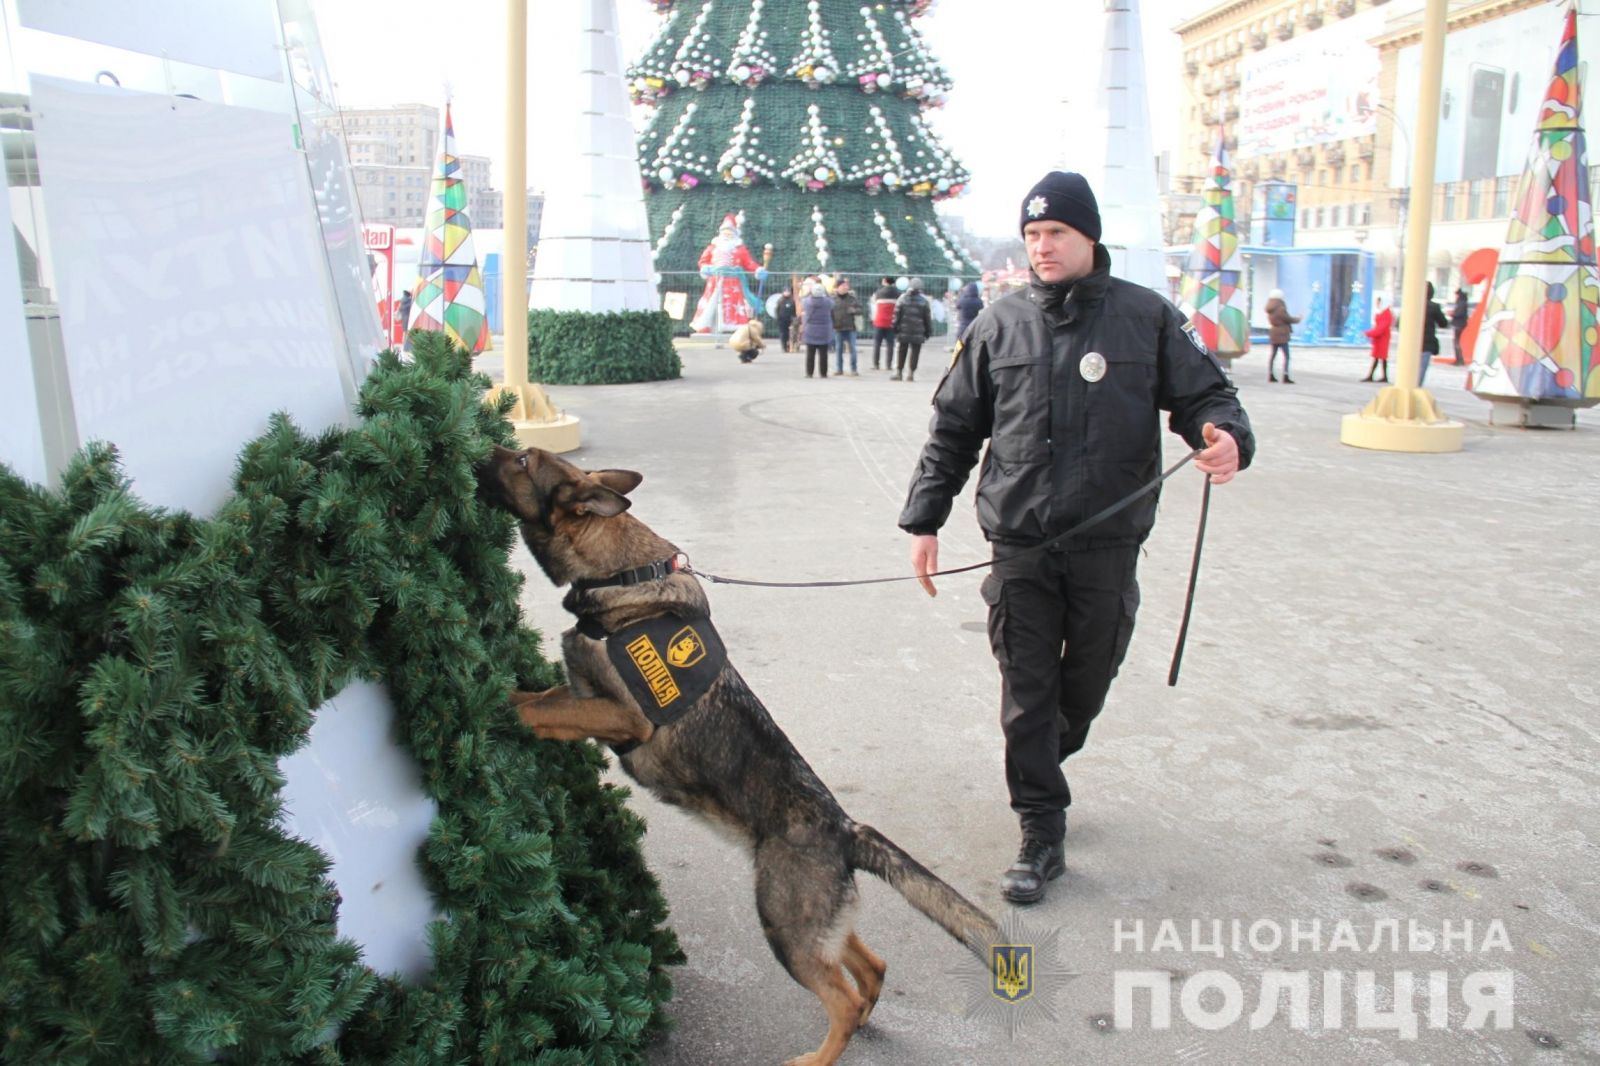 Новый год в Харькове: Гулянья пройдут под охраной 2 530 силовиков